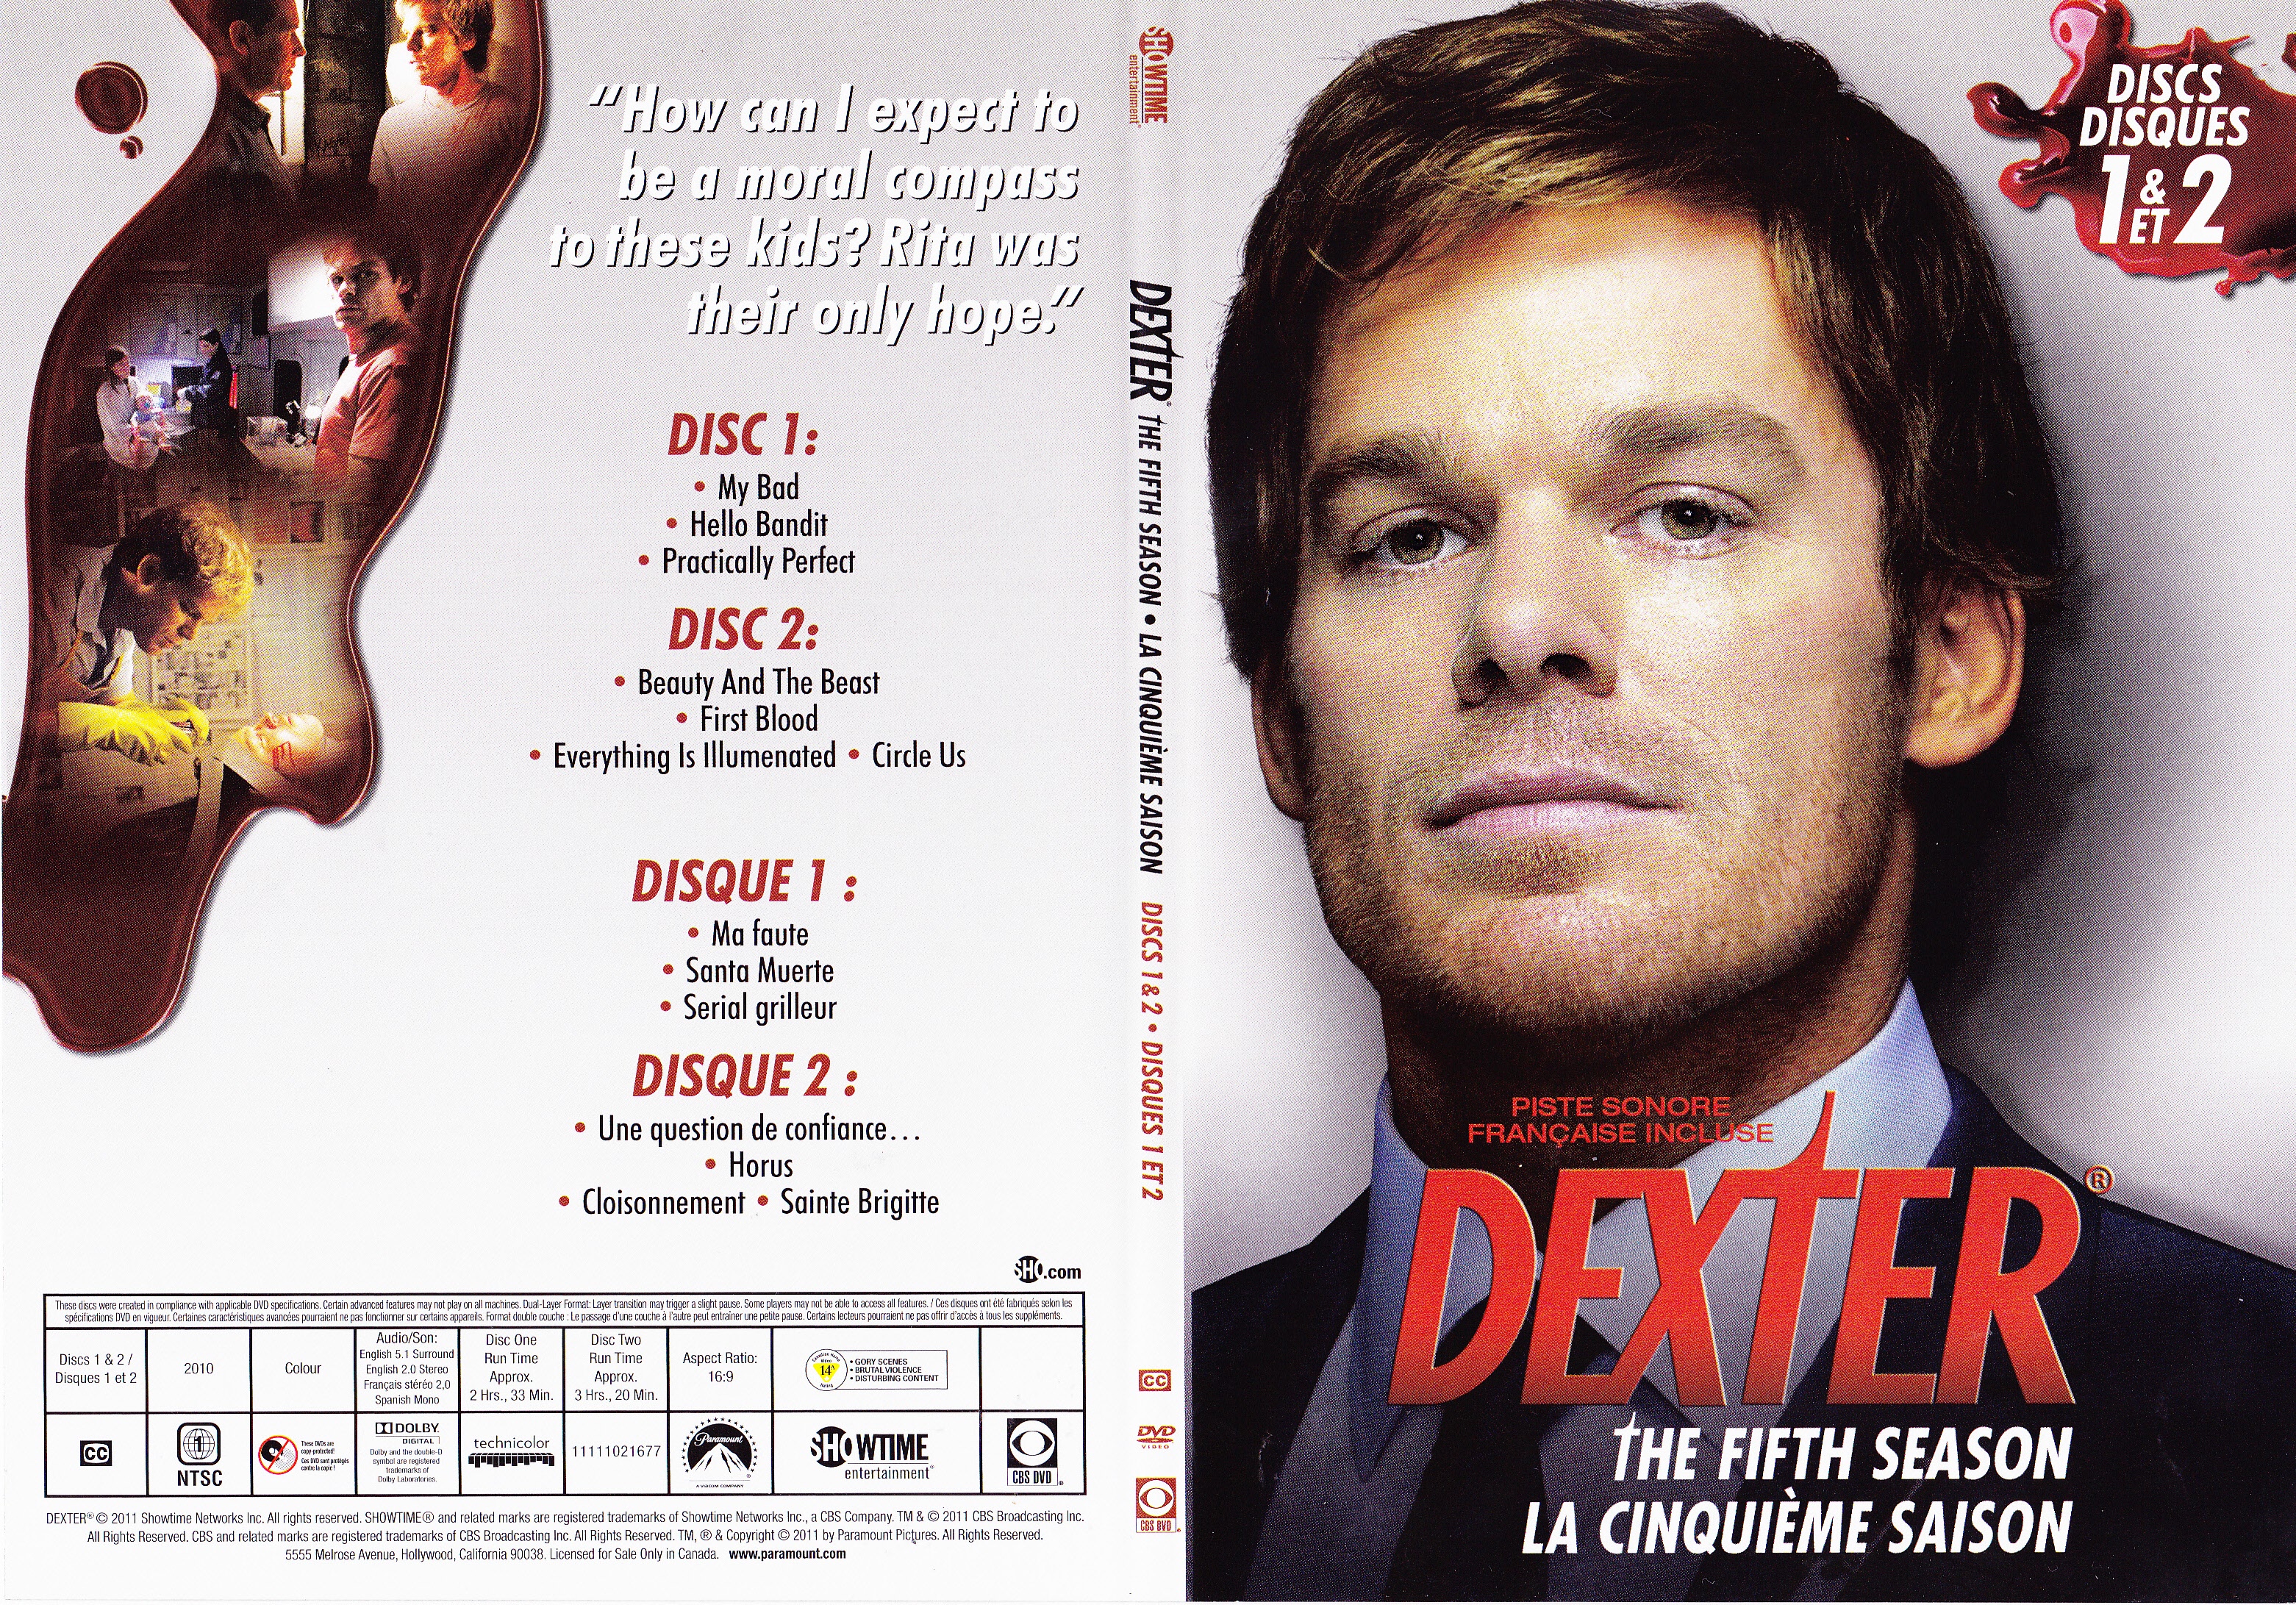 Jaquette DVD Dexter Saison 5 DVD 1 (Canadienne)